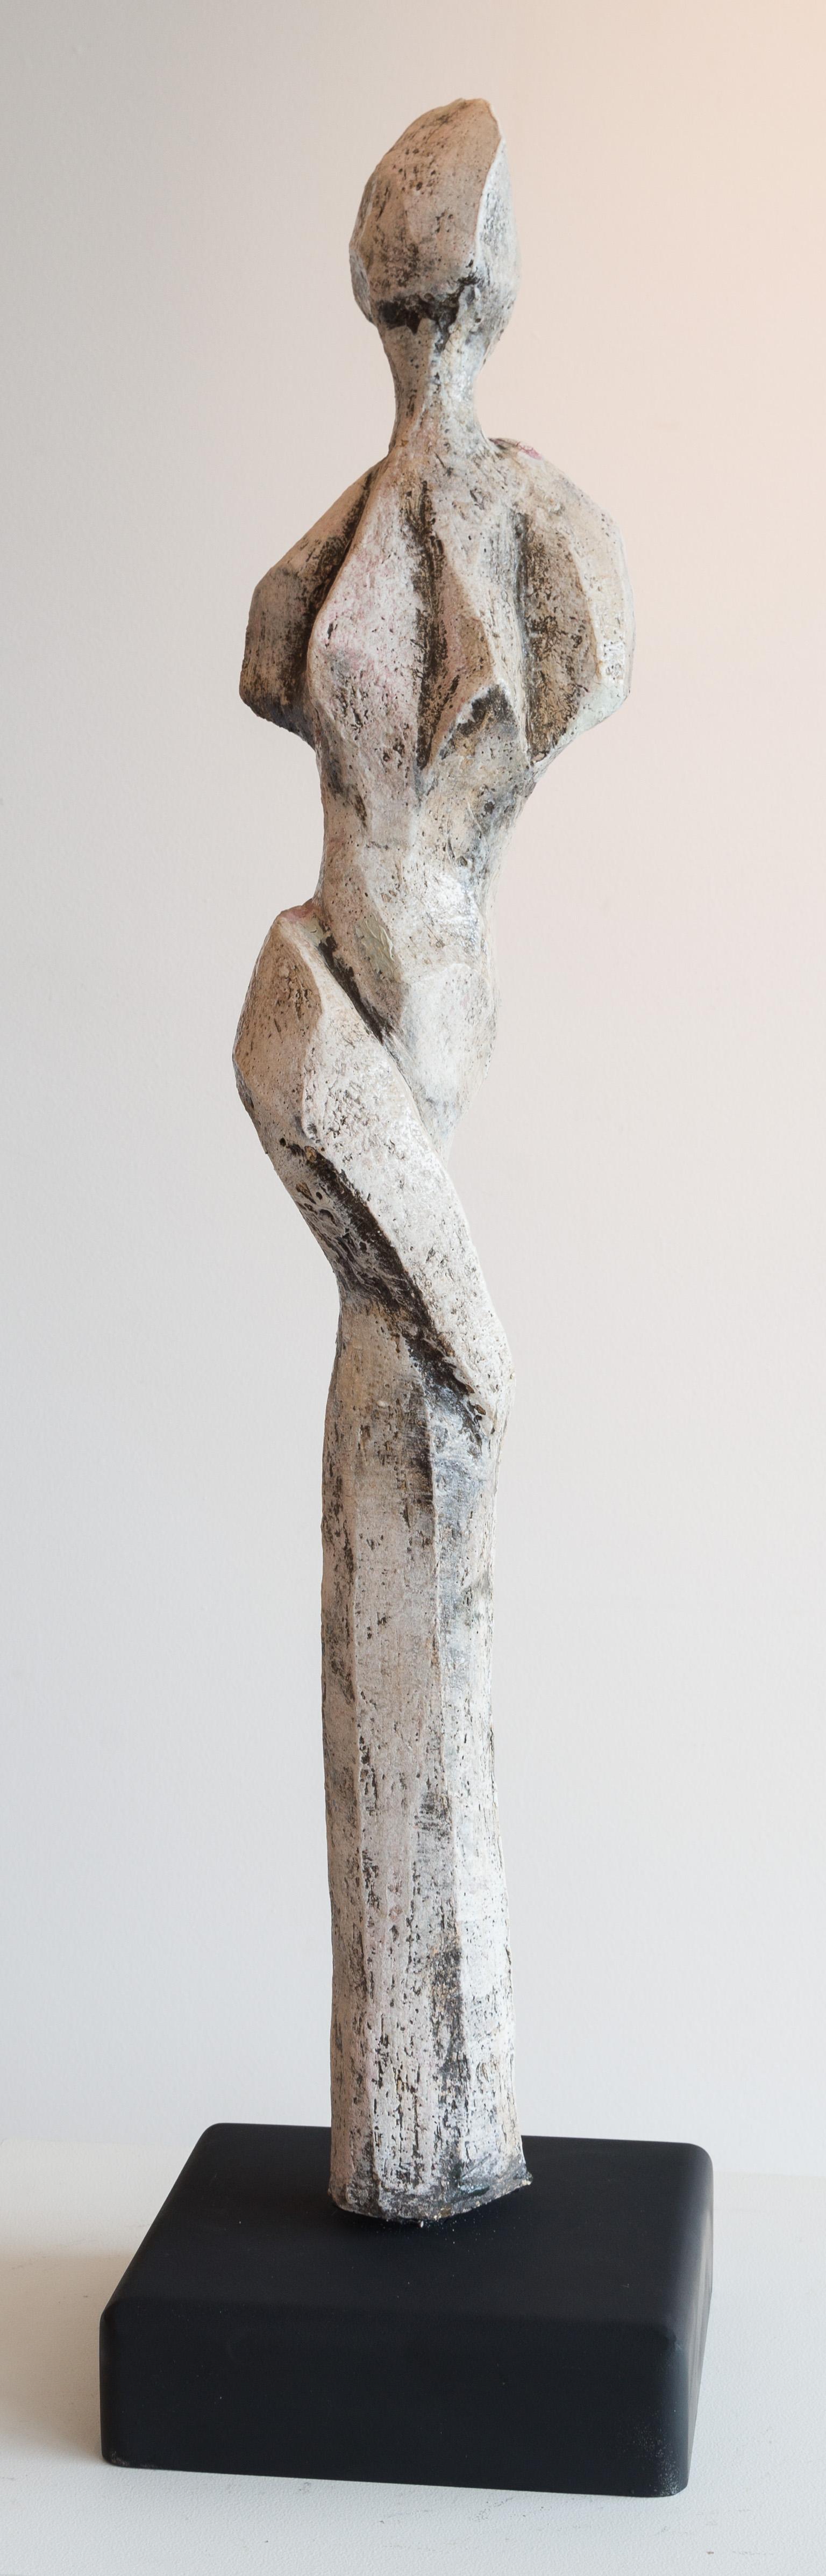 Sheila Ganch Figurative Sculpture - Statuesque